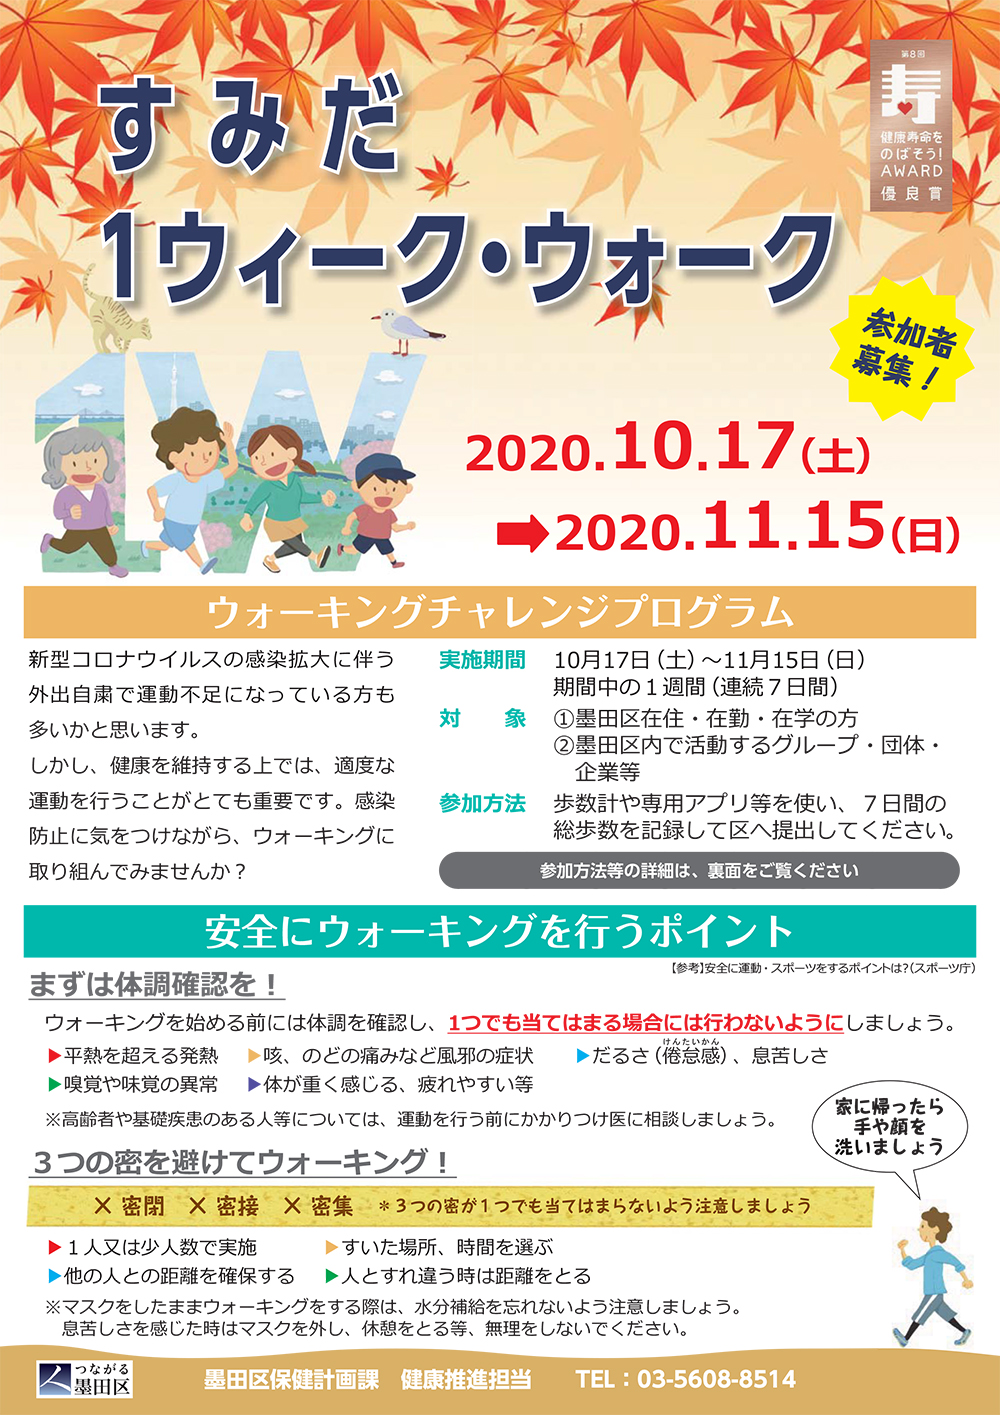 Sumida 1 Week Walk Leaflet